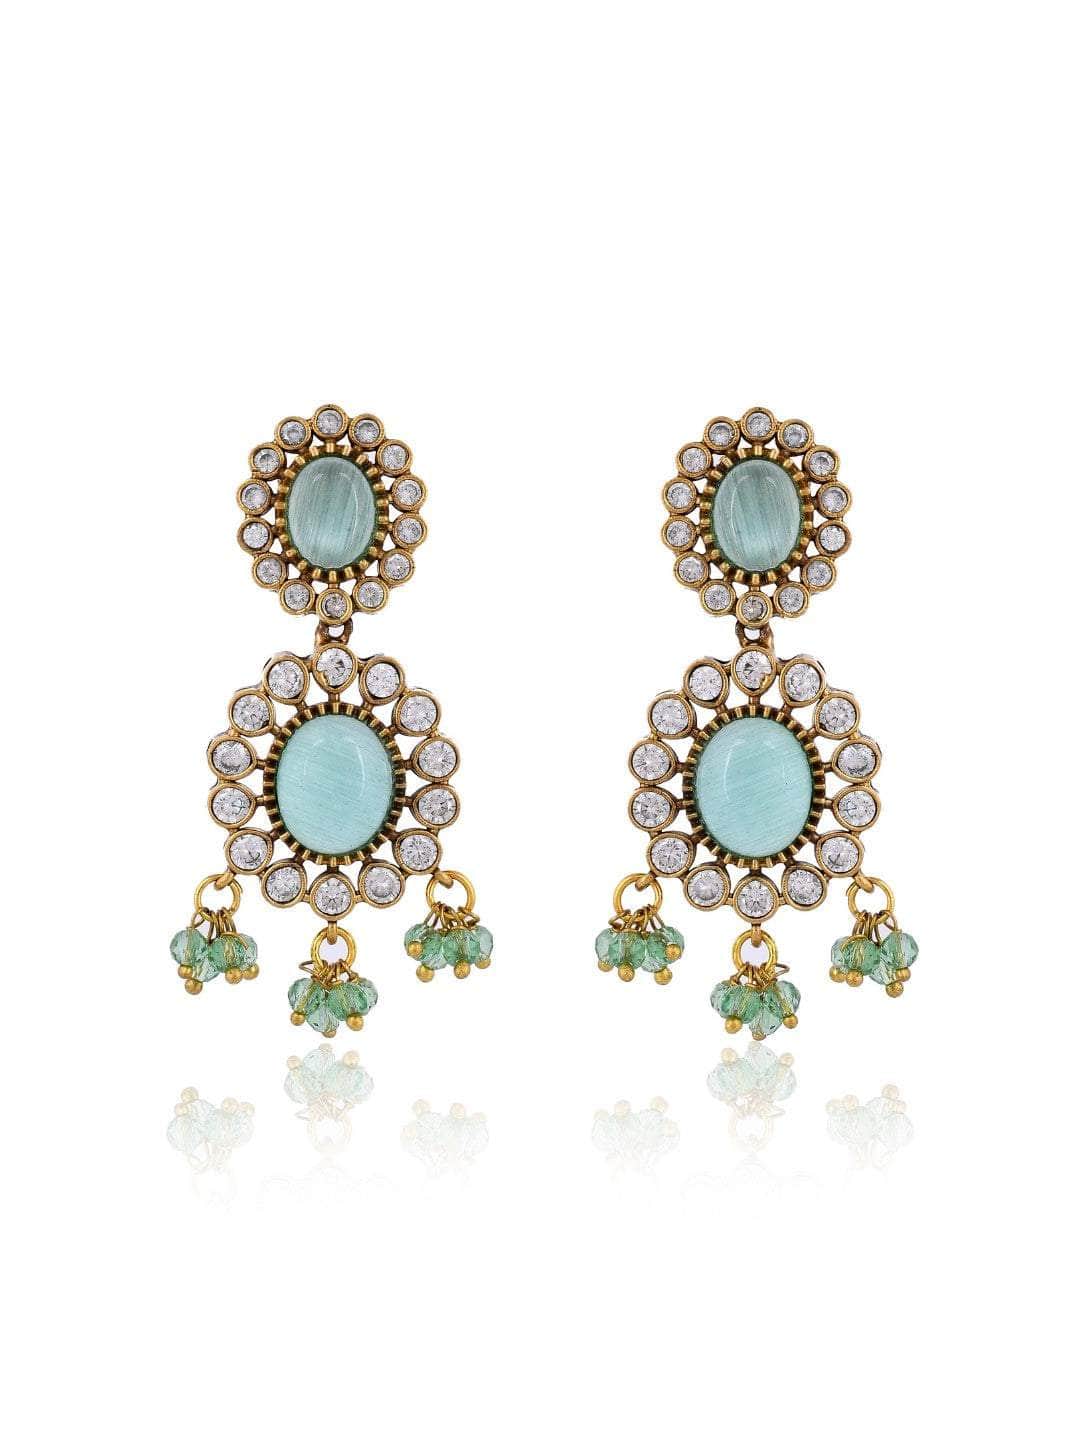 Ishhaara Emerald Green Kundan Pearl Necklace Set